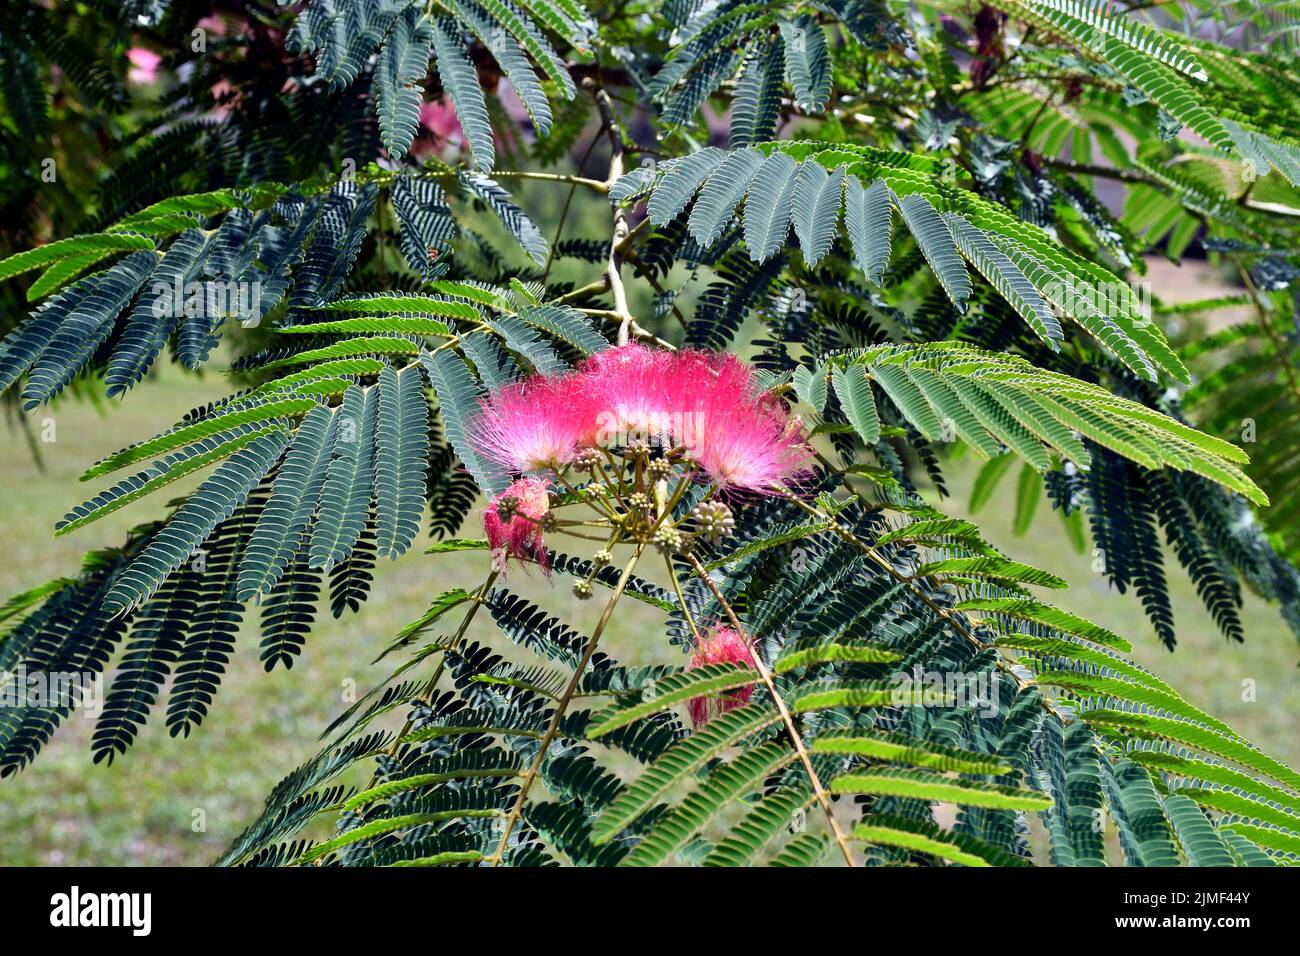 le soi-disant arbre de pluie avec les fleurs délicates de la famille mimosa est souvent planté comme un arbuste ornemental dans les jardins et les parcs Banque D'Images